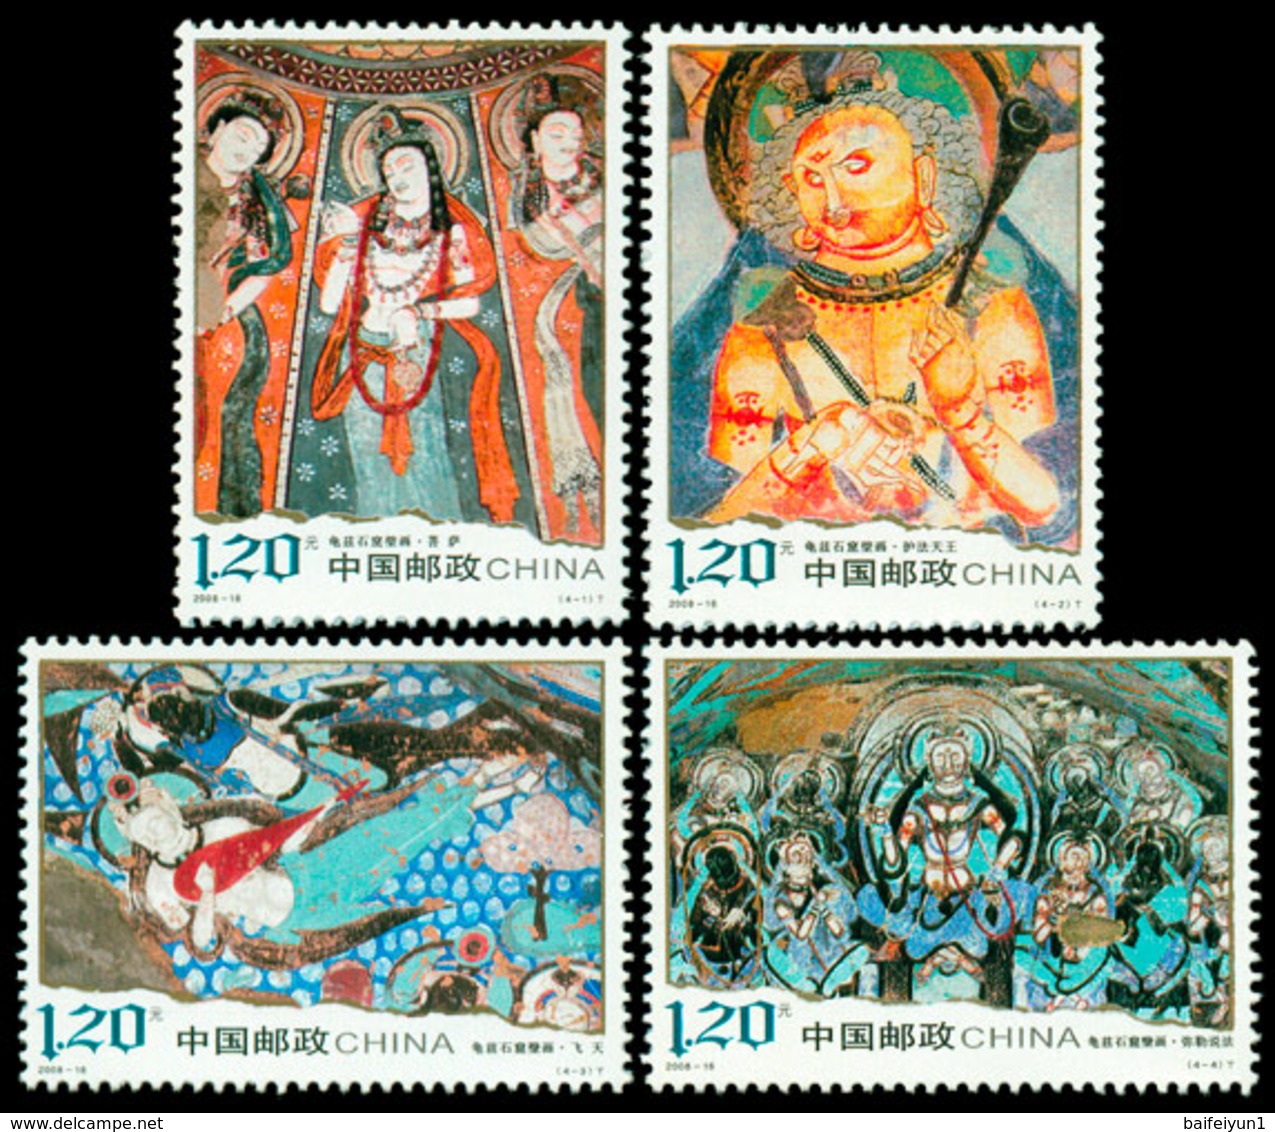 China 2008-16 Qiuci Grotto Murals Stamps - Buddhism